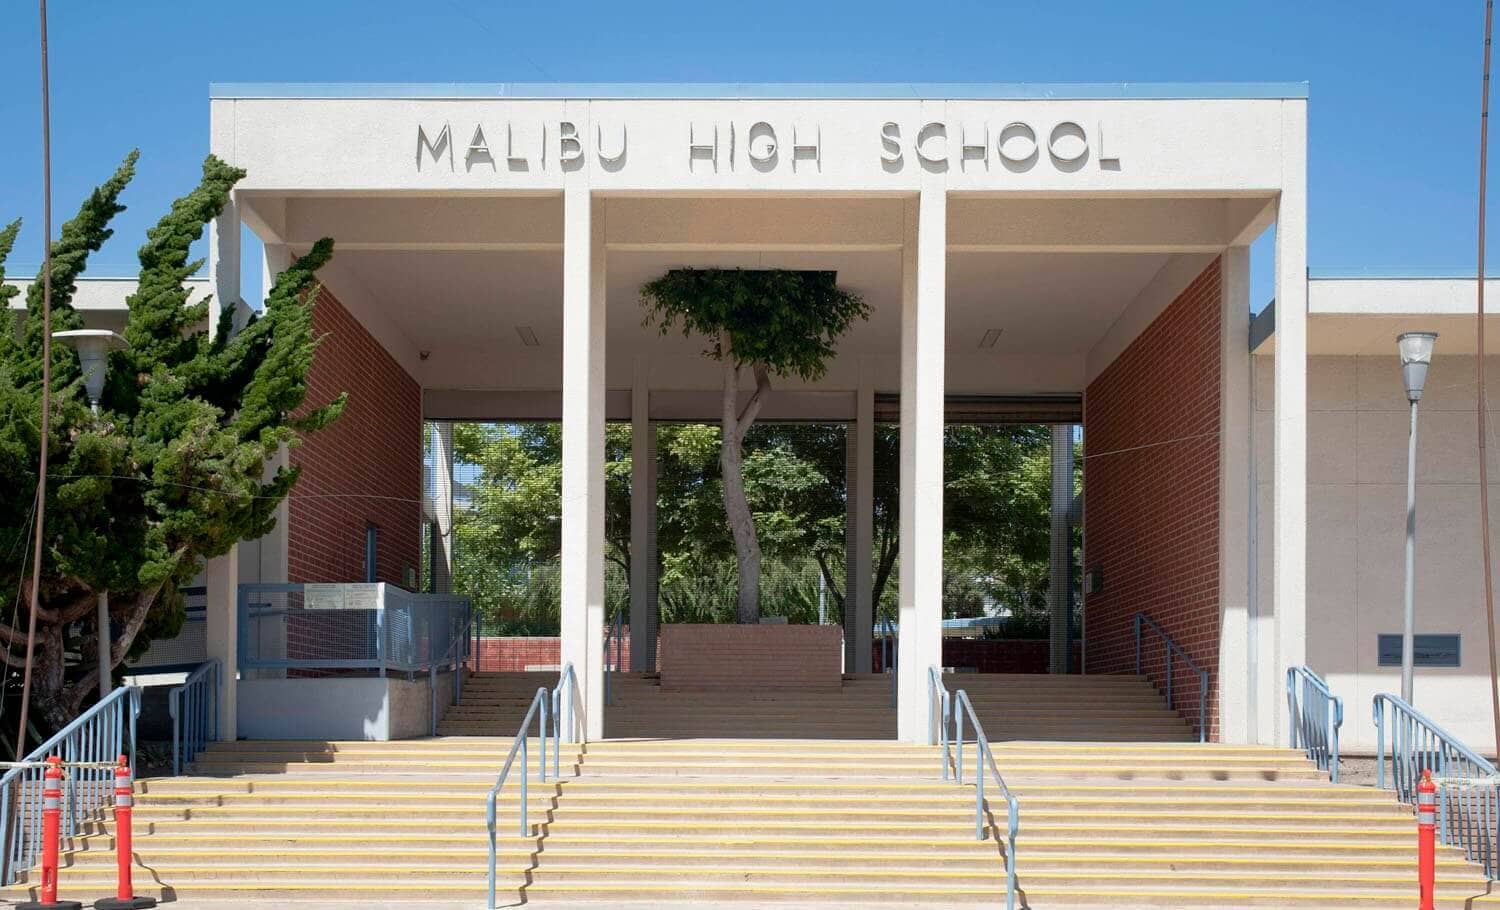 The Top 20 Public High Schools in Los Angeles